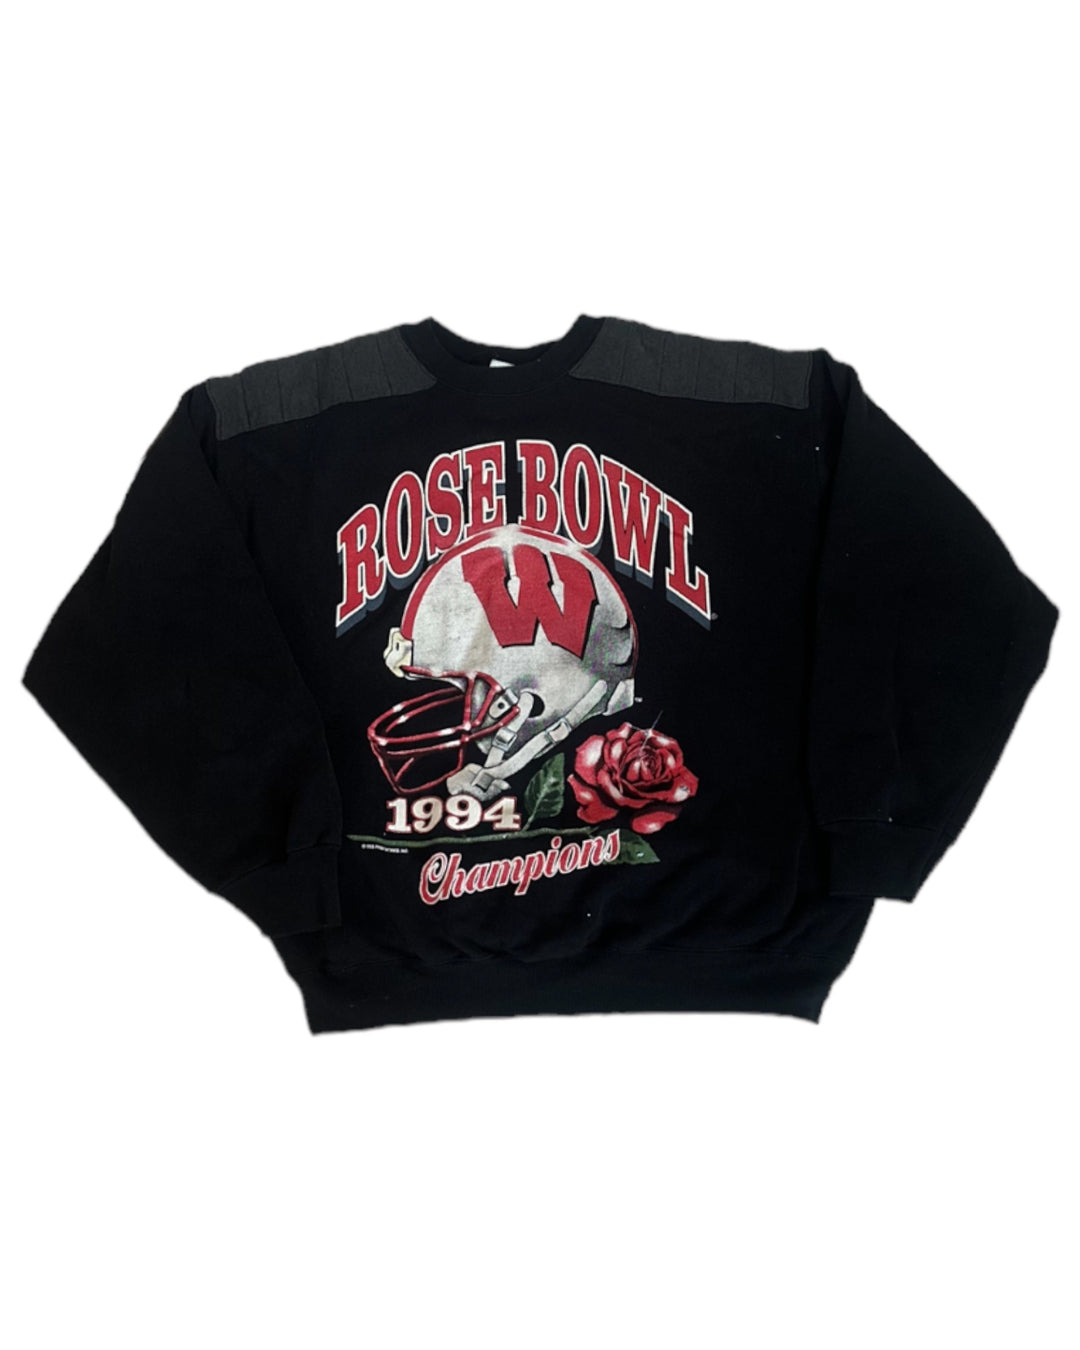 Wisconsin Vintage Sweatshirt